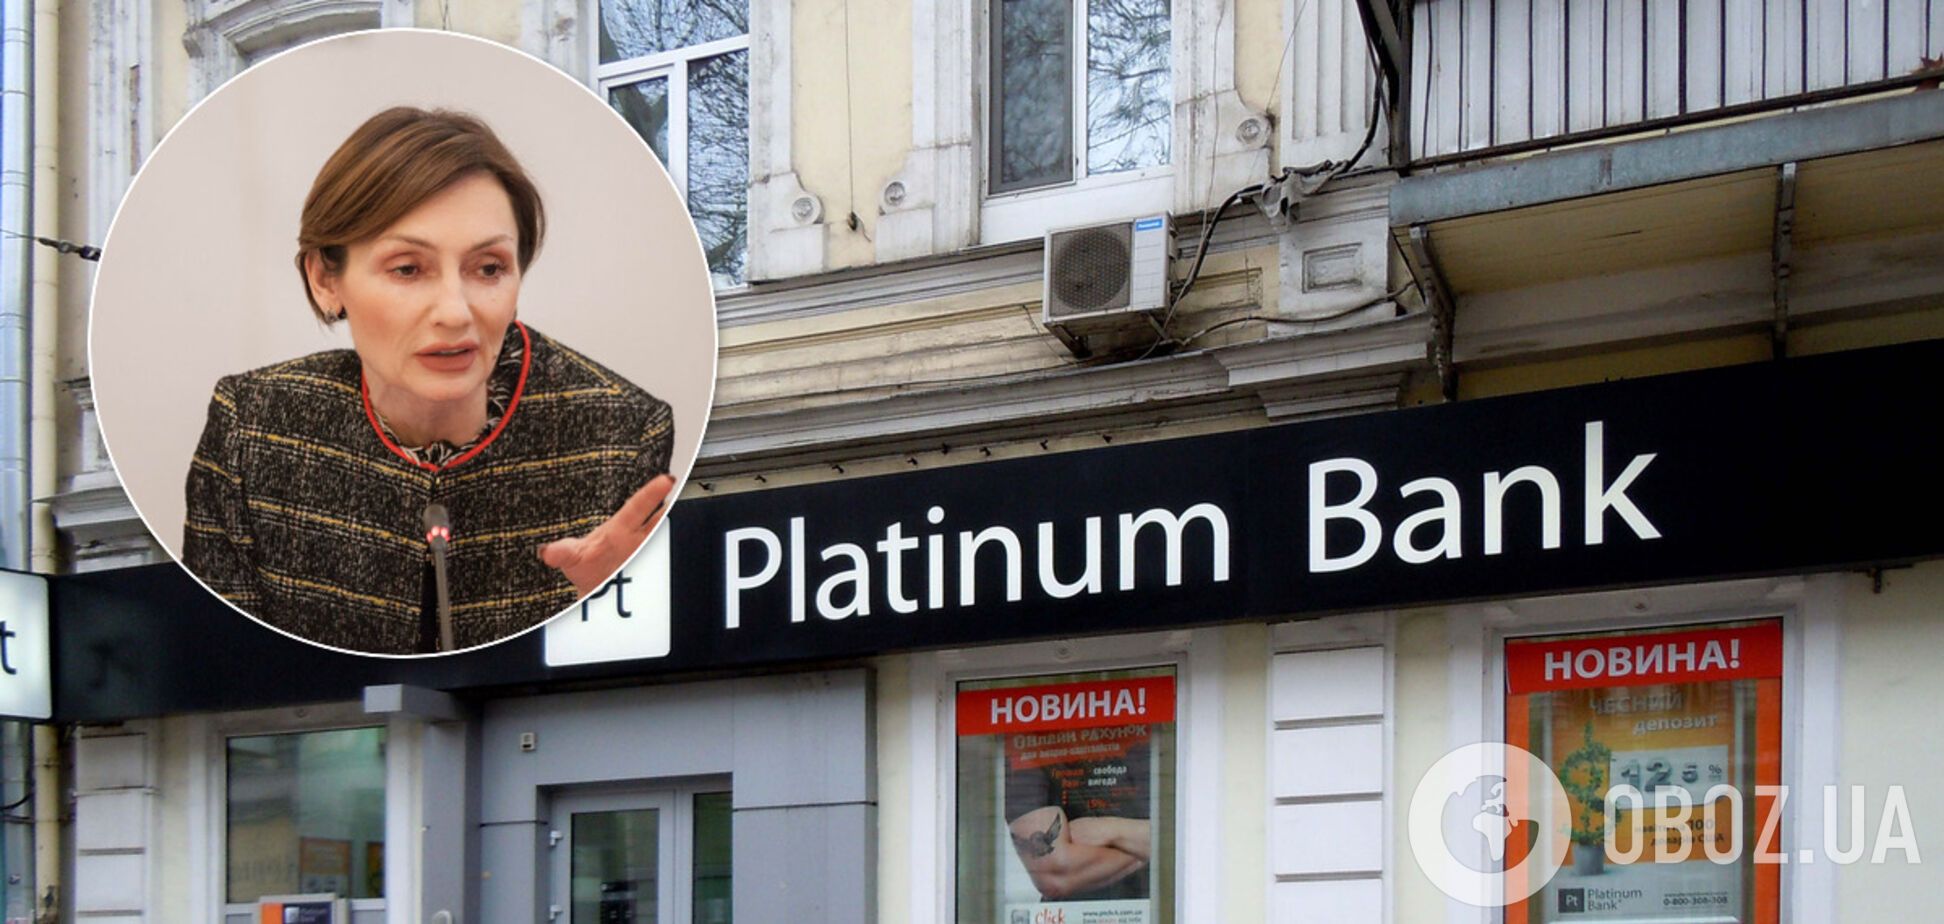 Фонд гарантирования вкладов подал иск к Рожковой по делу Платинум Банка